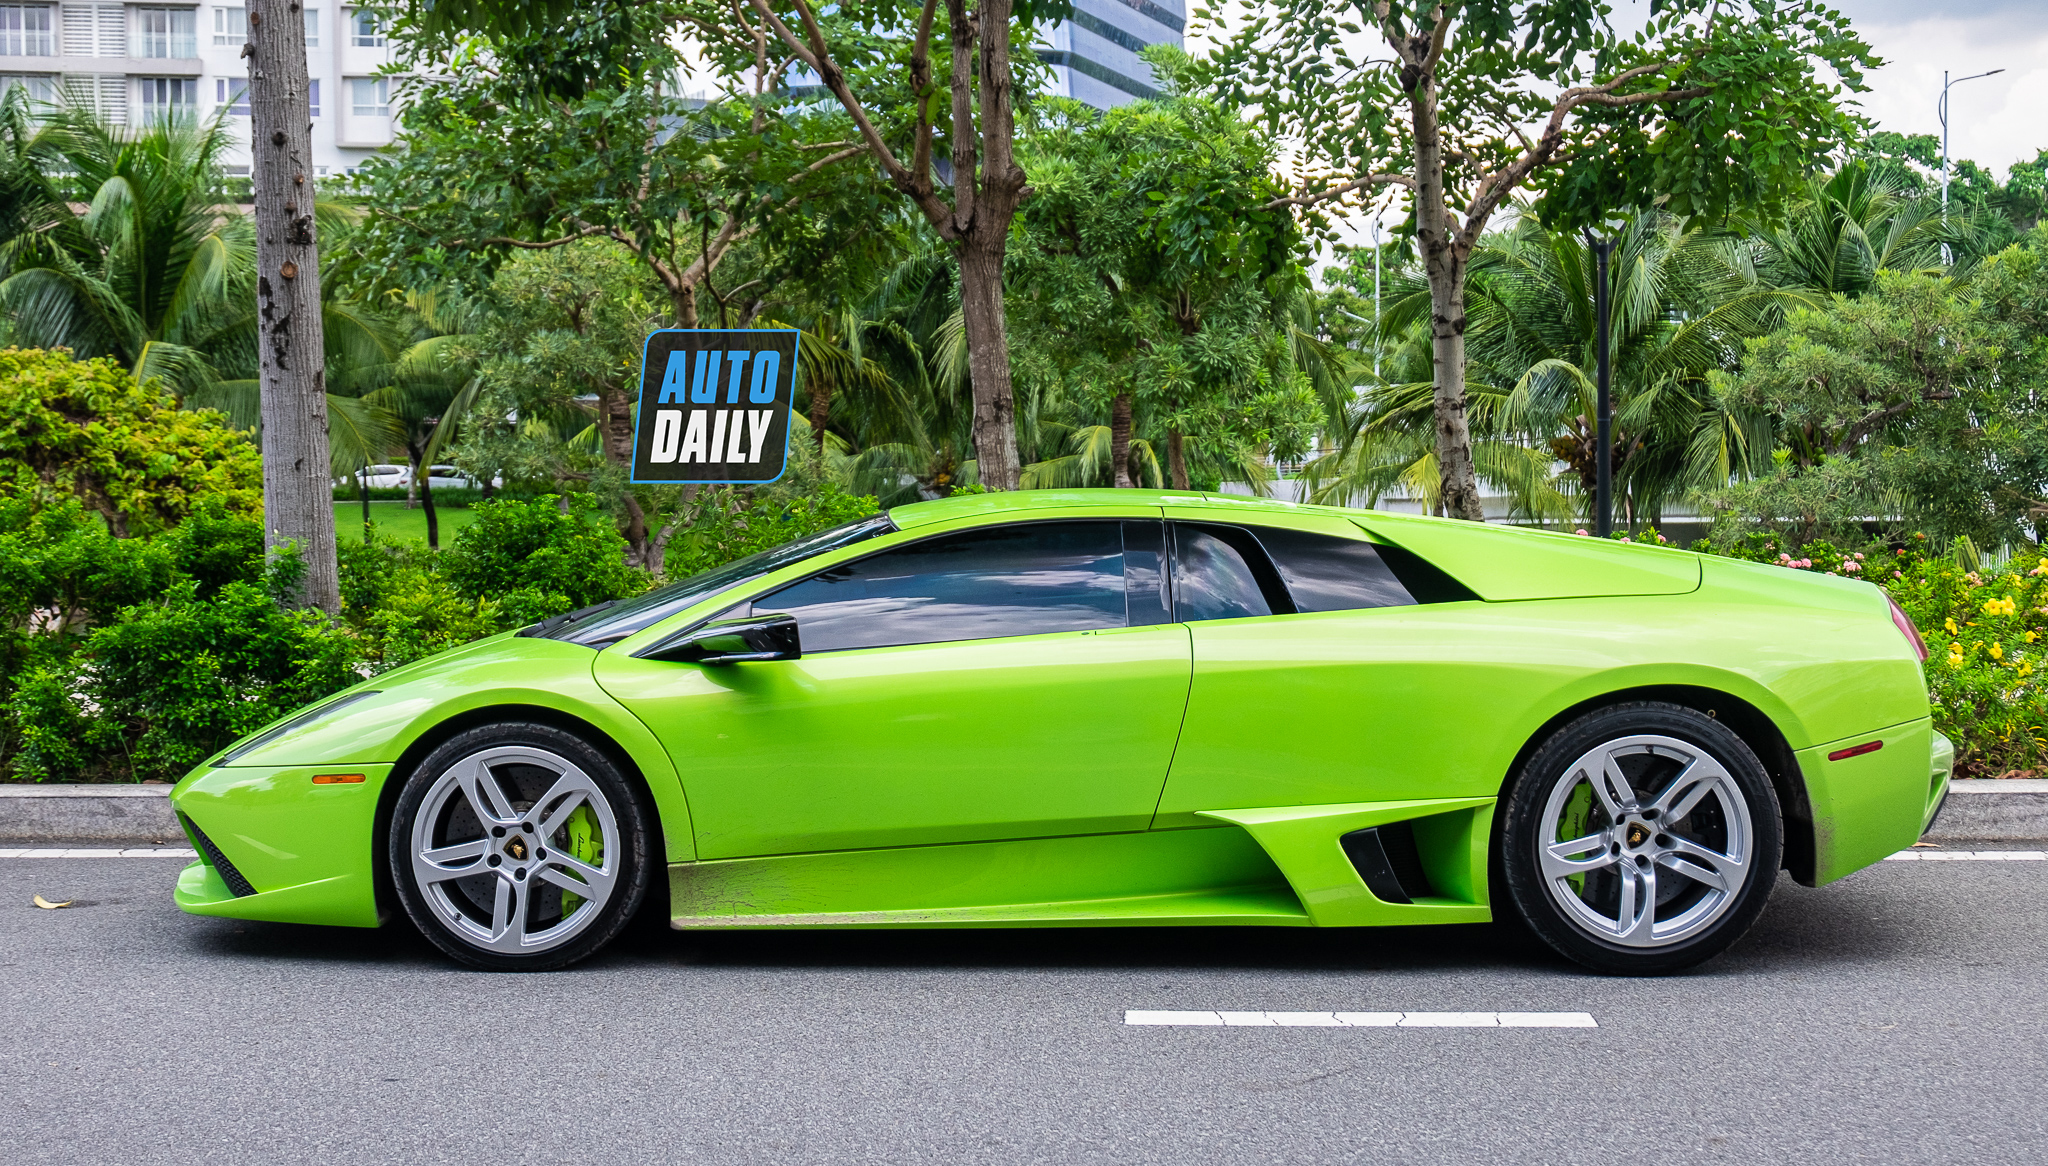 Lamborghini Murcielago xanh cốm độc nhất Việt Nam bất ngờ tái xuất trên phố